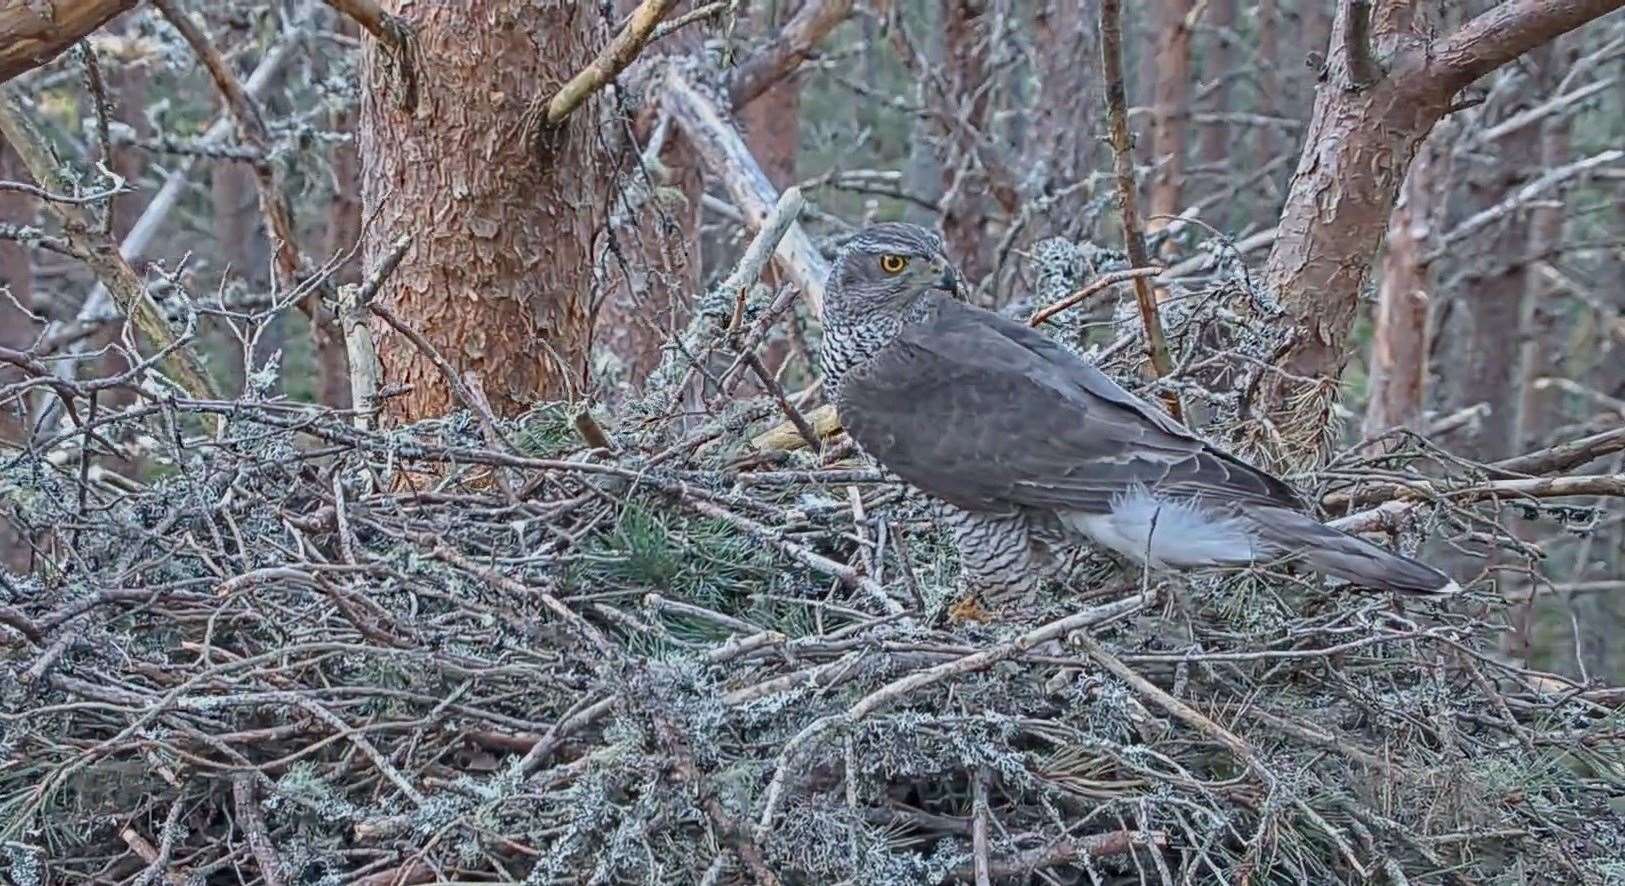 Male goshawk on nest at Loch Garten Nature Centre in Abernethy.